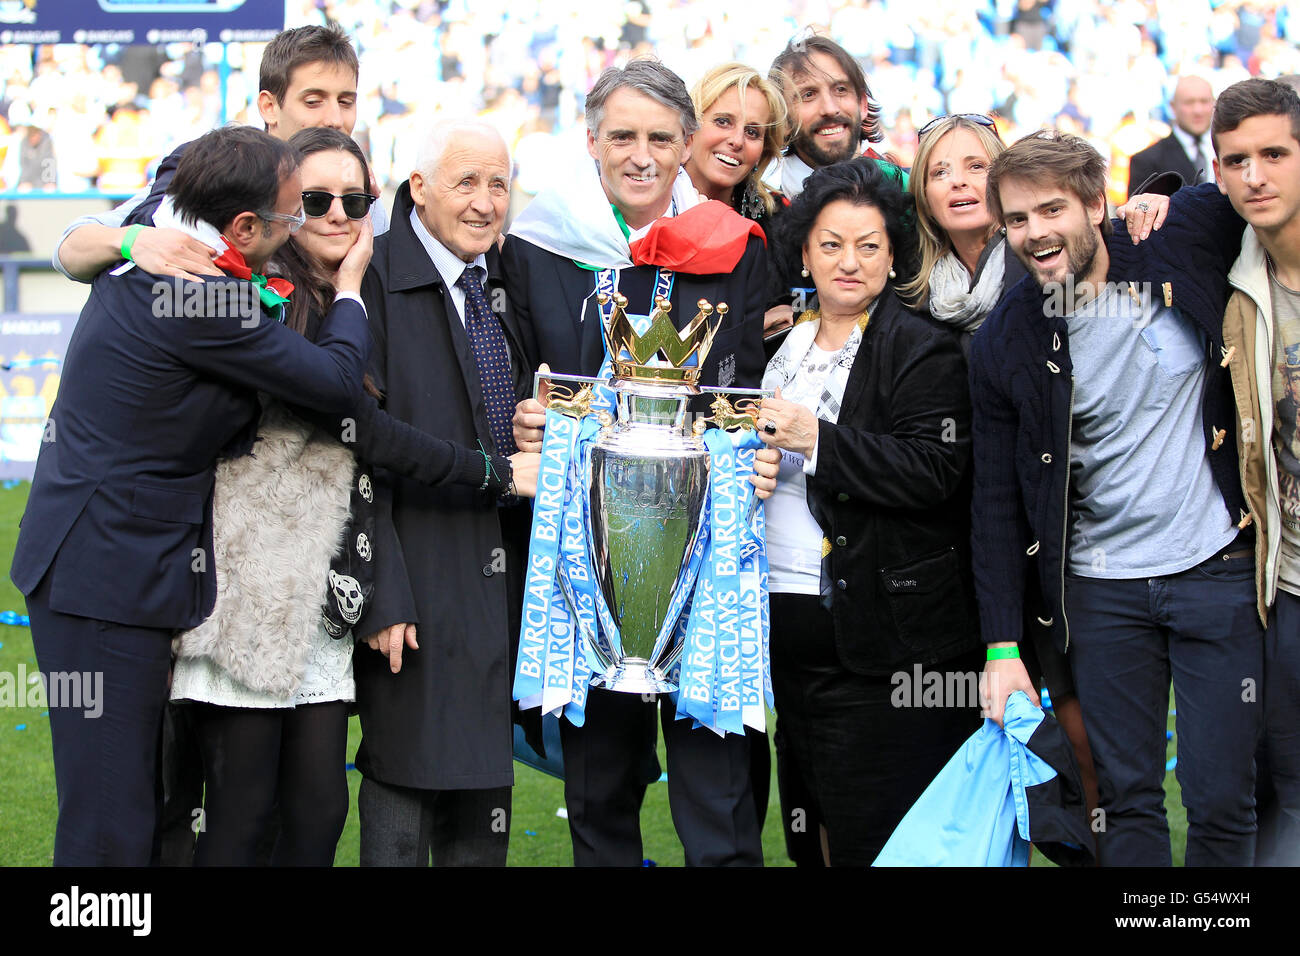 Il manager della città di Manchester Roberto Mancini (al centro), drappeggiato in una Bandiera Italiana, festeggia insieme al padre Aldo (4° a sinistra), alla moglie Federica (6° a destra) e alla madre Marianna (4° a destra) con il Barclays Premier League Trophy Foto Stock